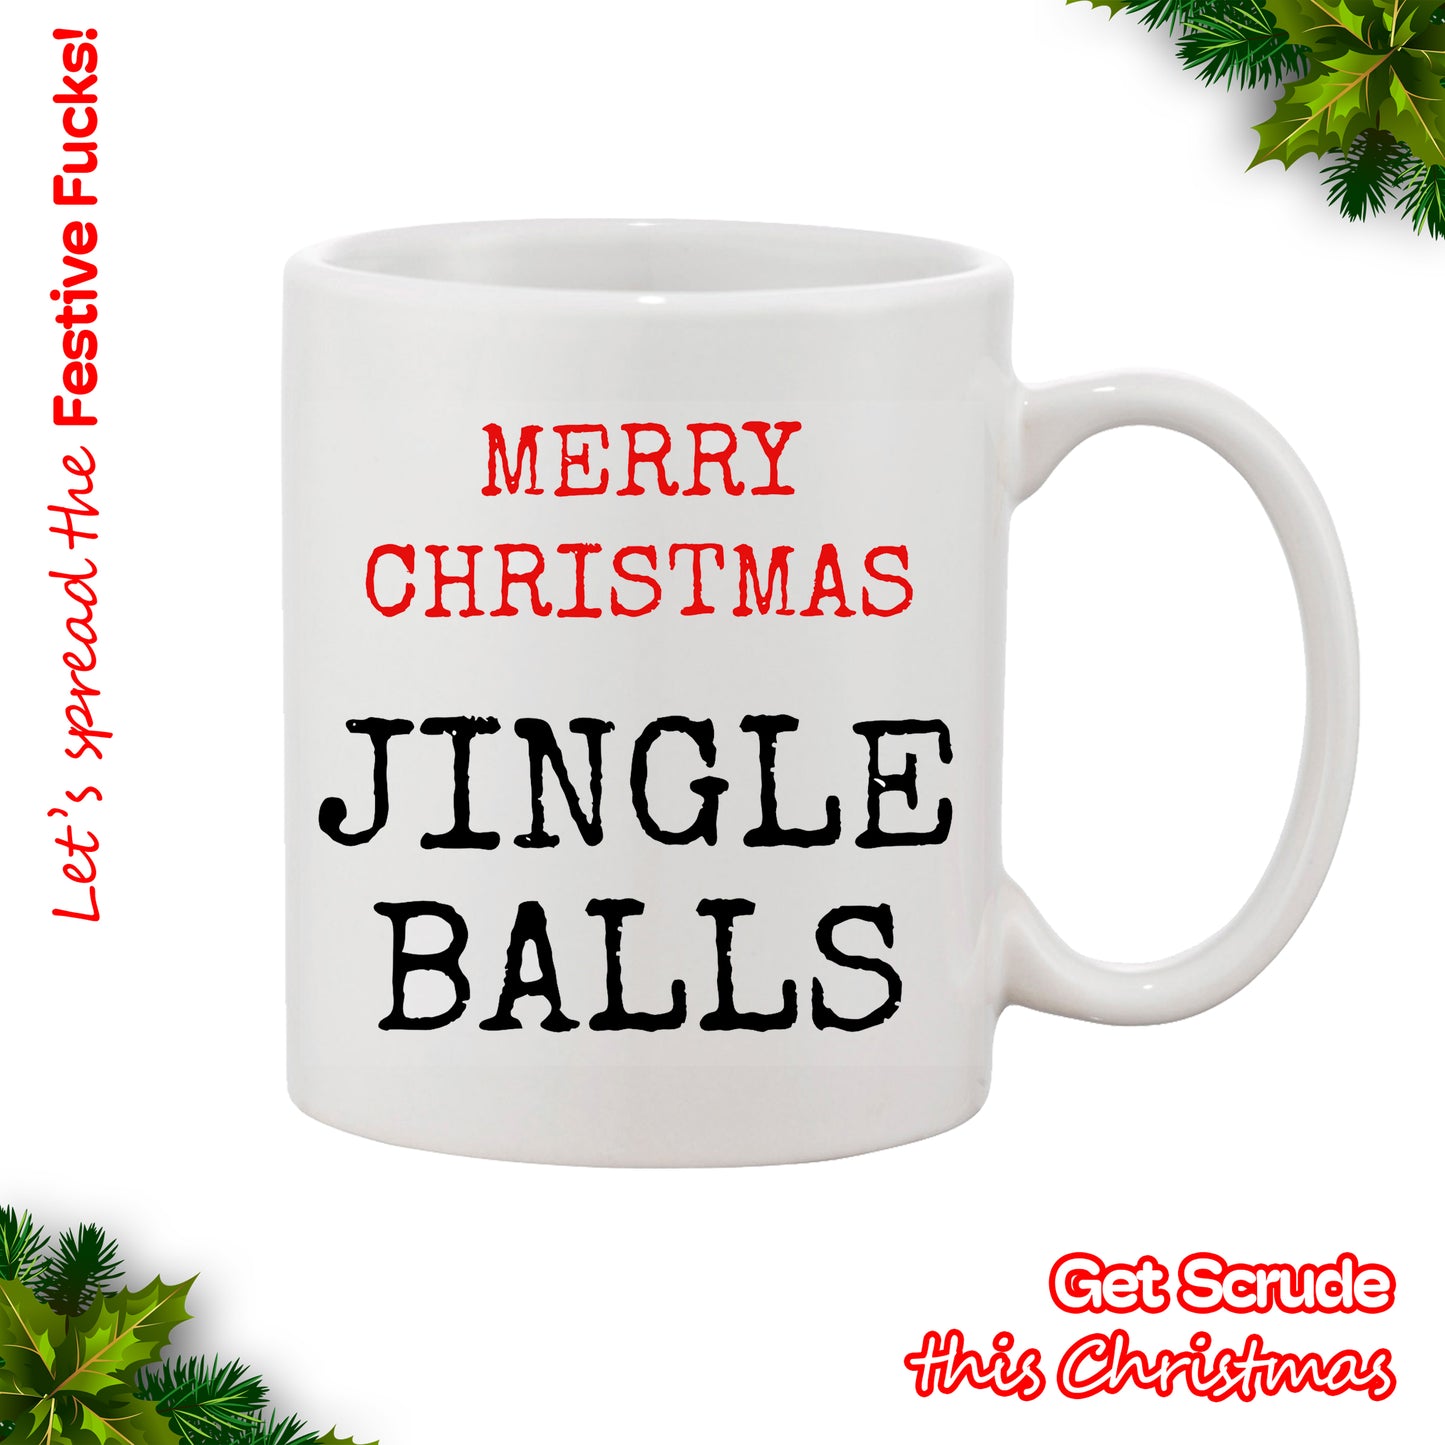 Merry Christmas Jingle Balls